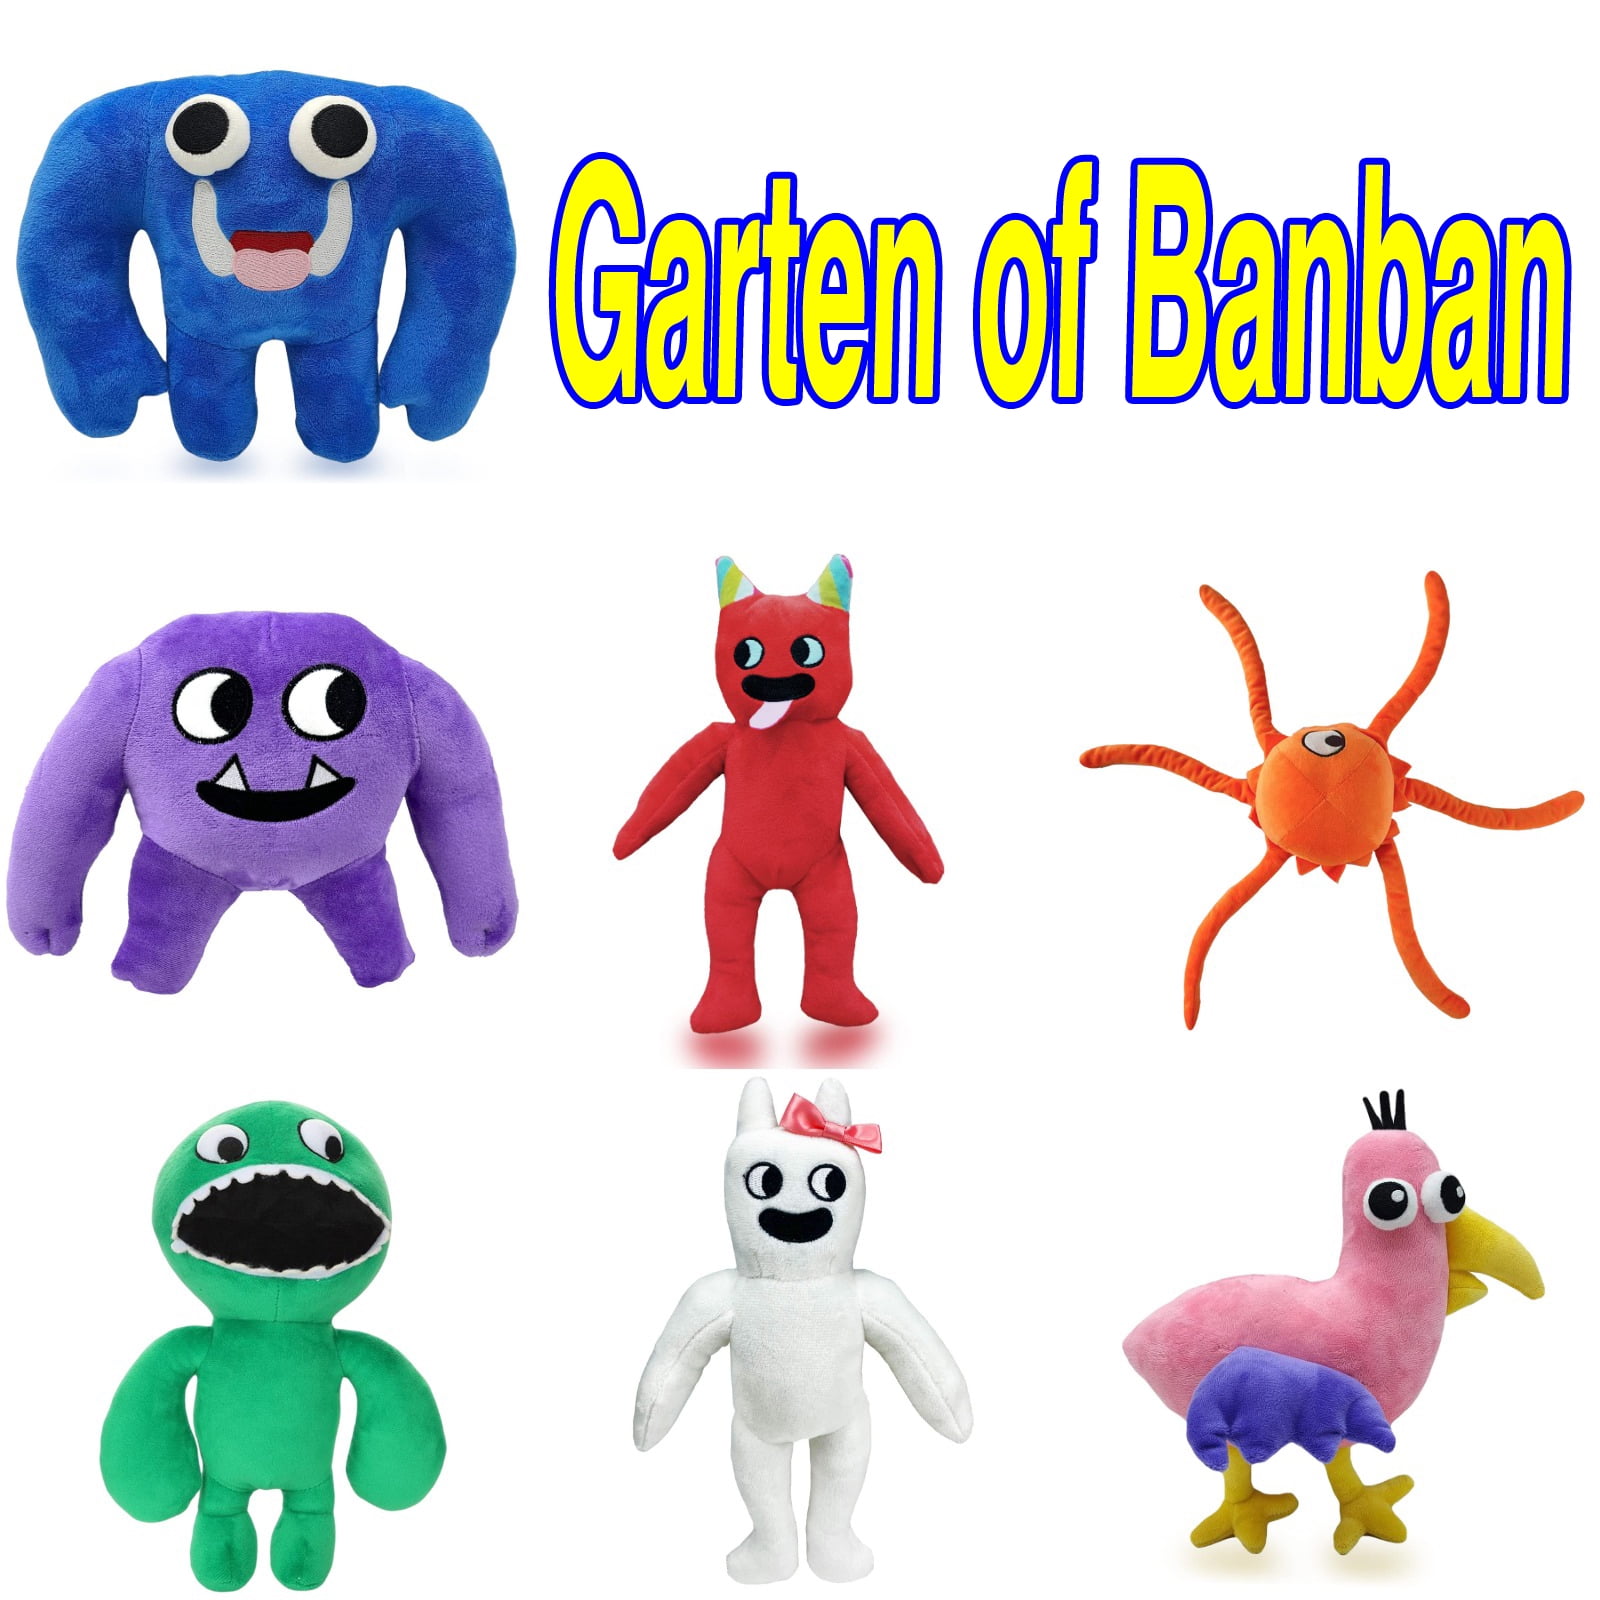 LOYALSE Garten of Banban Plush, Jumbo Josh Plushies Toy Soft